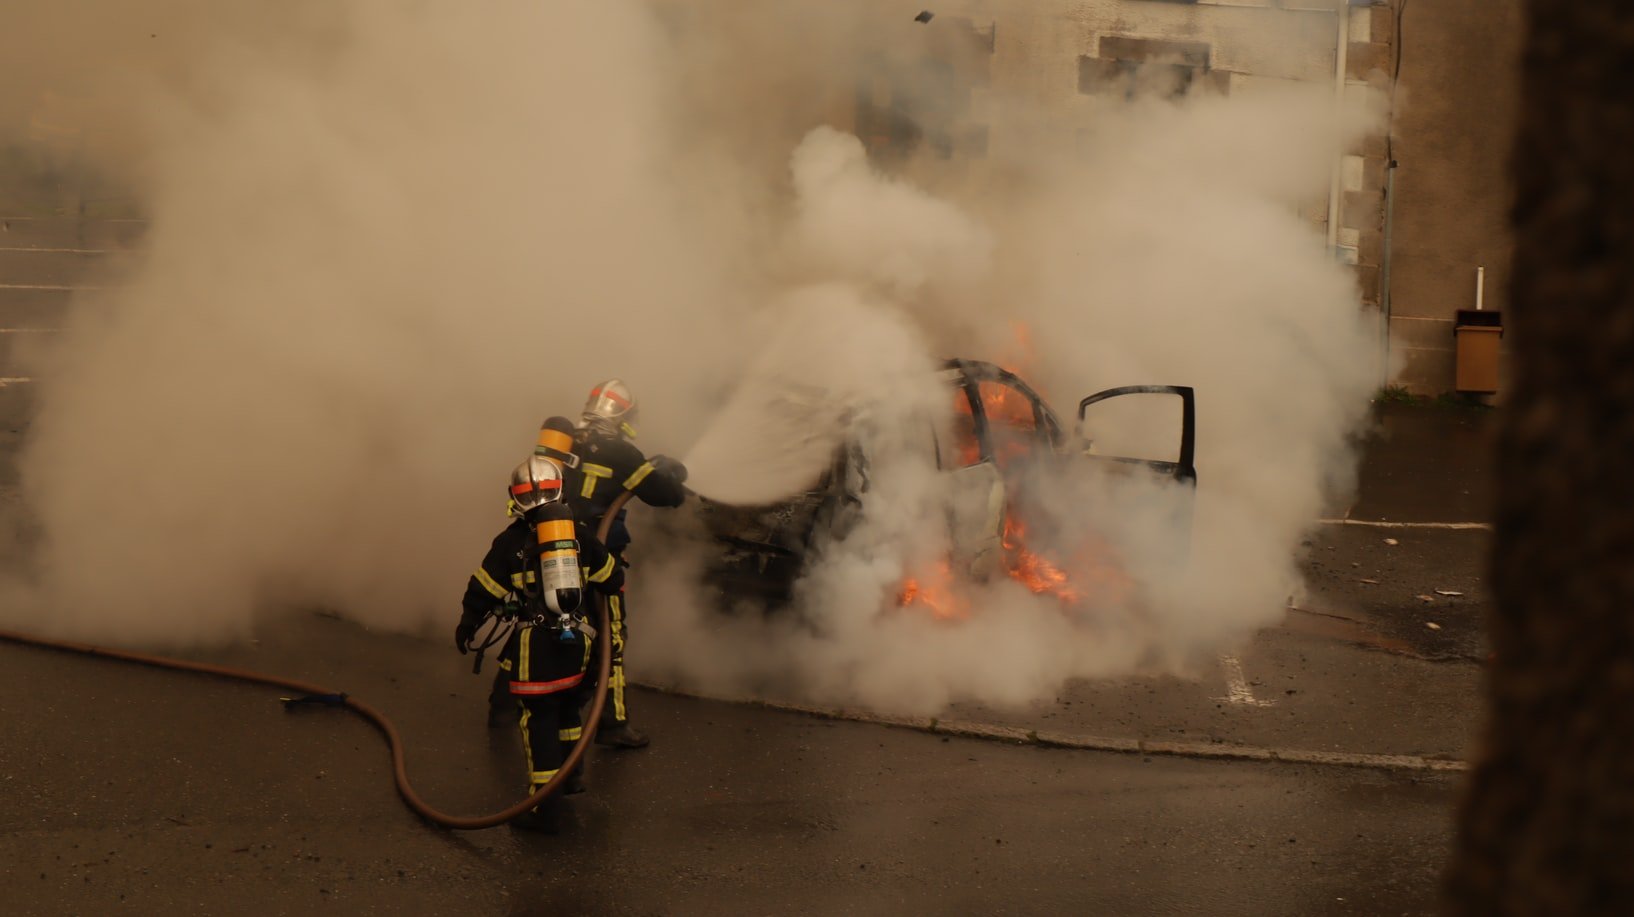 Bomberos sofocando el fuego tras un accidente automovilístico. | Foto: Unsplash